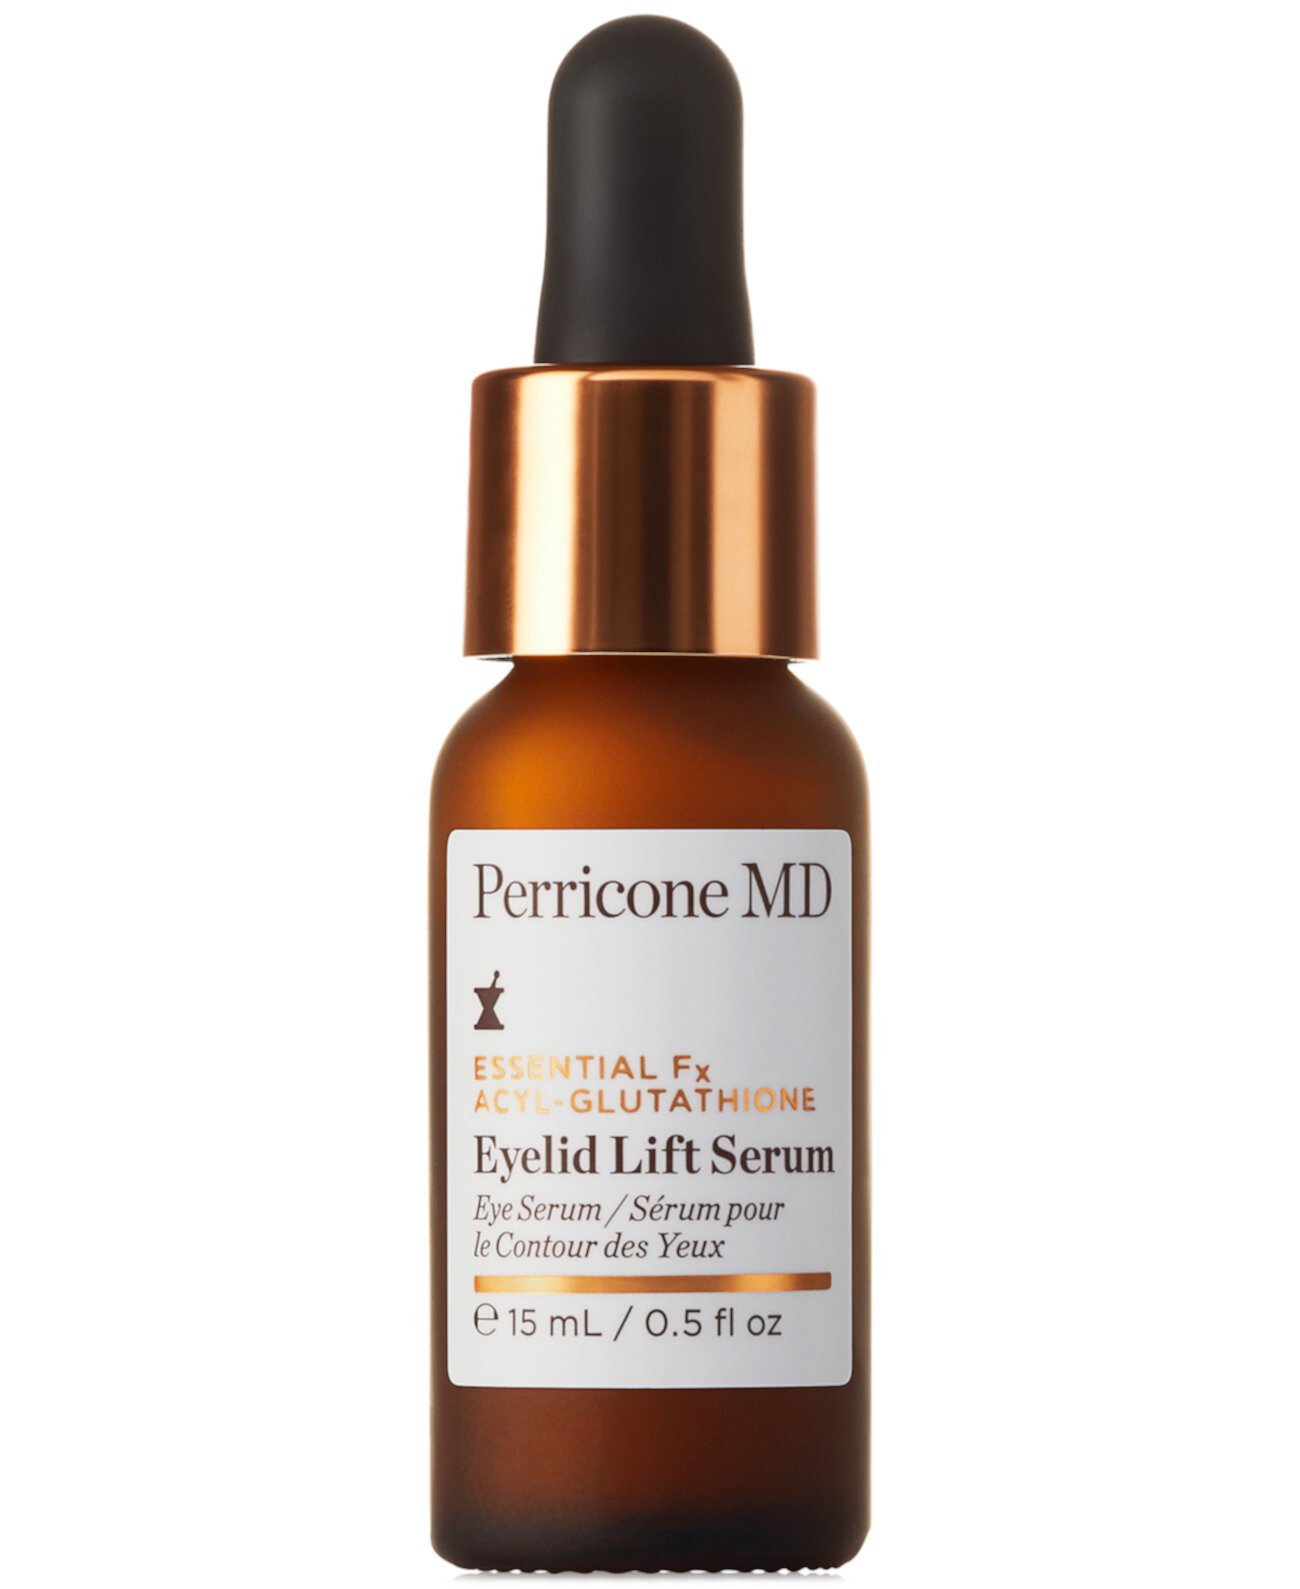 Essential Fx Acyl-Glutathione Eyelid Lift Serum, 0,5 унции. Perricone MD